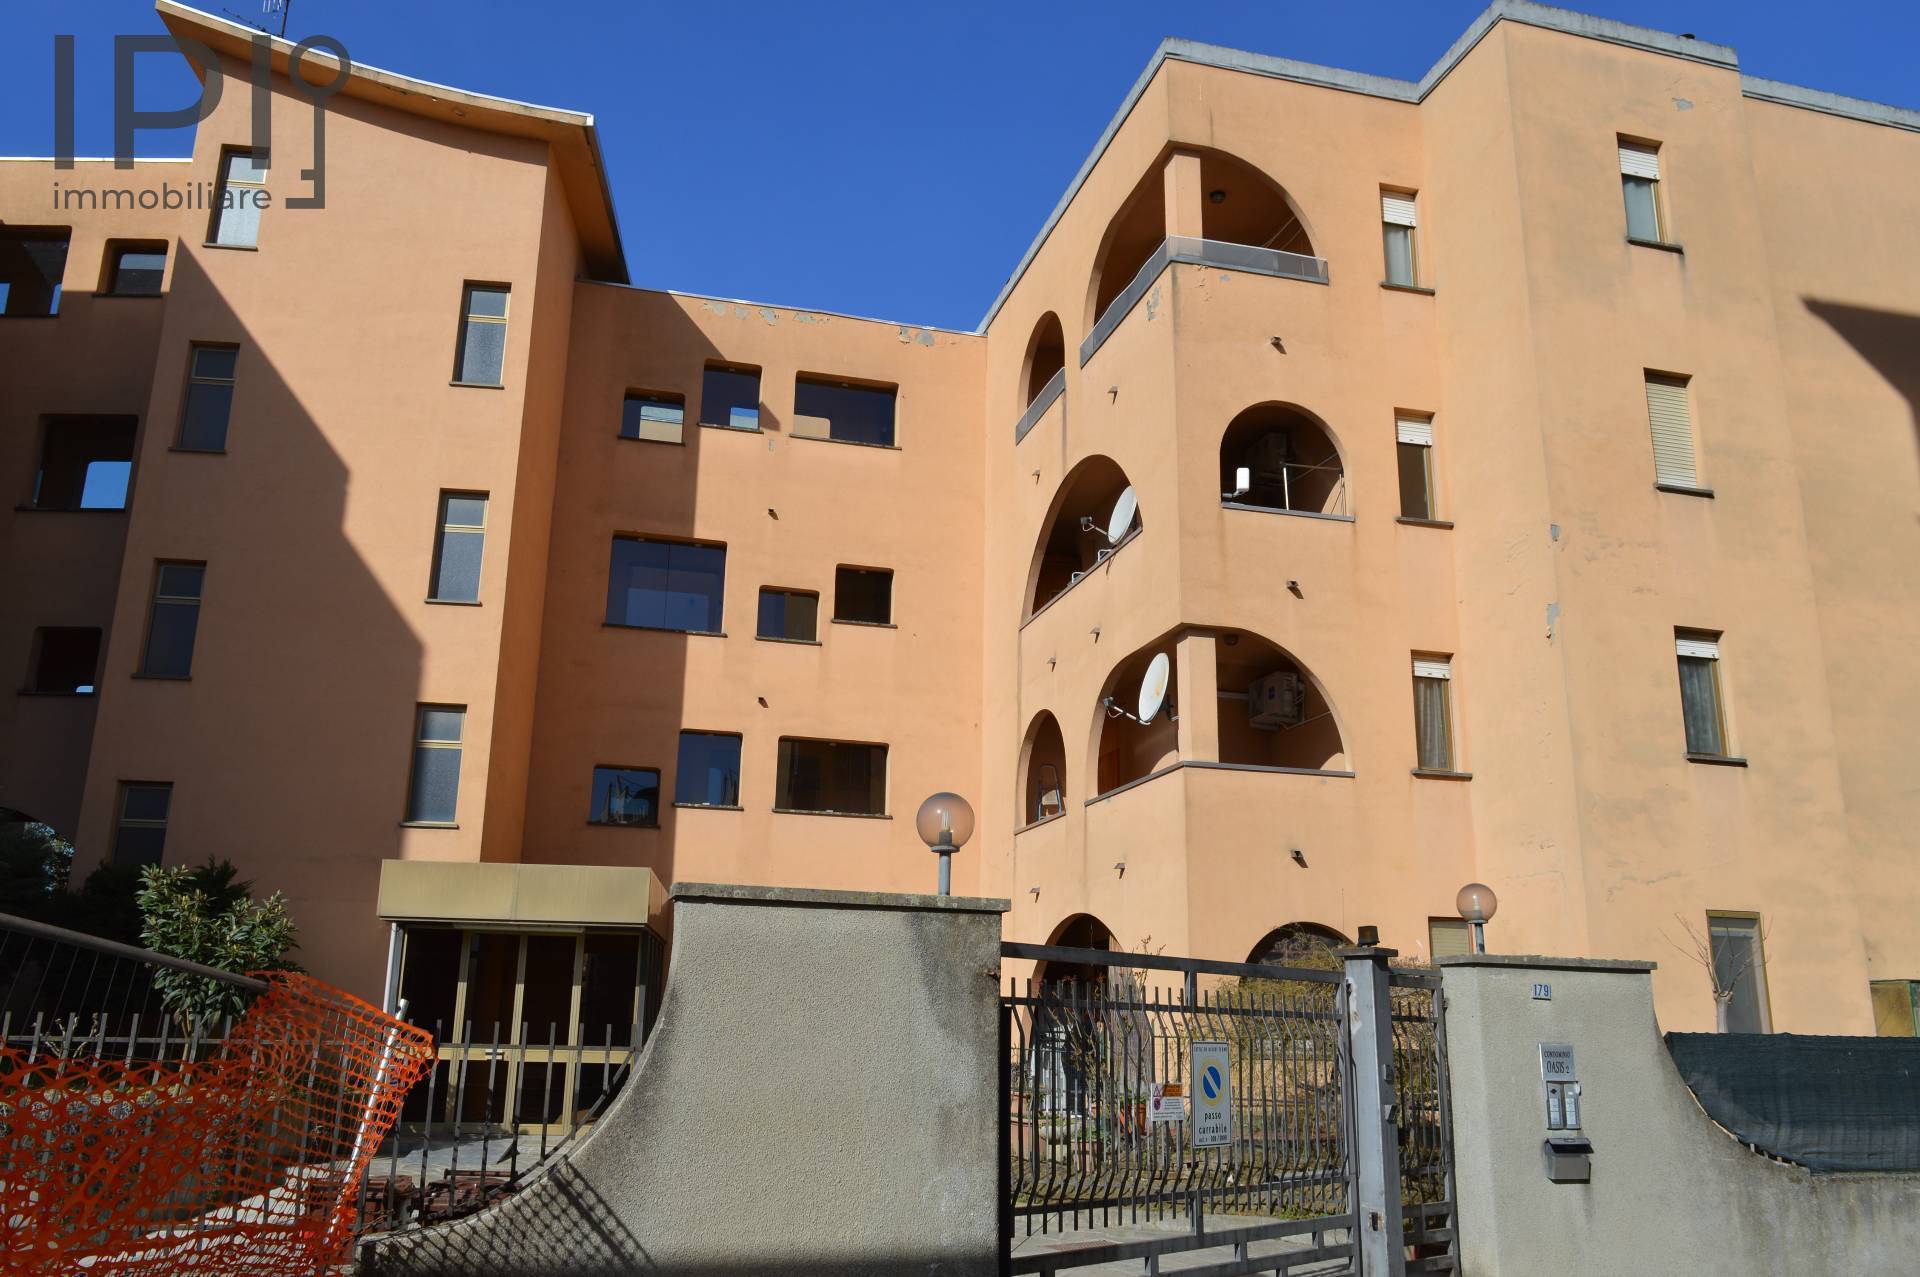 Appartamento in vendita a Acqui Terme, 4 locali, prezzo € 85.000 | PortaleAgenzieImmobiliari.it